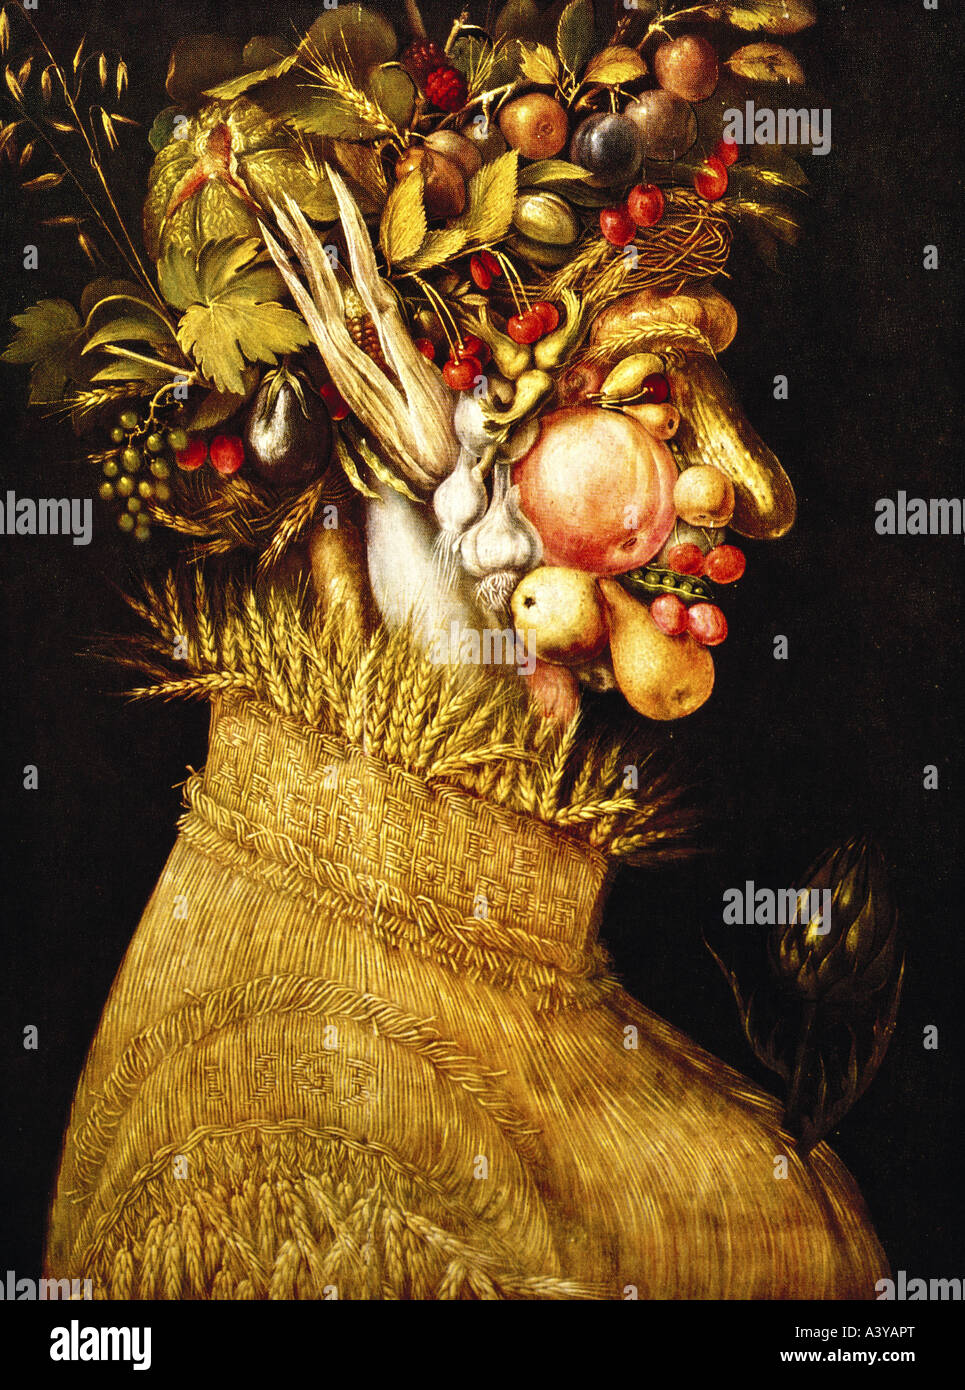 "Belle Arti, Arcimboldo, Giuseppe (circa 1527 - 1593), pittura, 'Summer'(L'estate), 1573, olio su tela, 67 cm x 51 cm, il museo Foto Stock